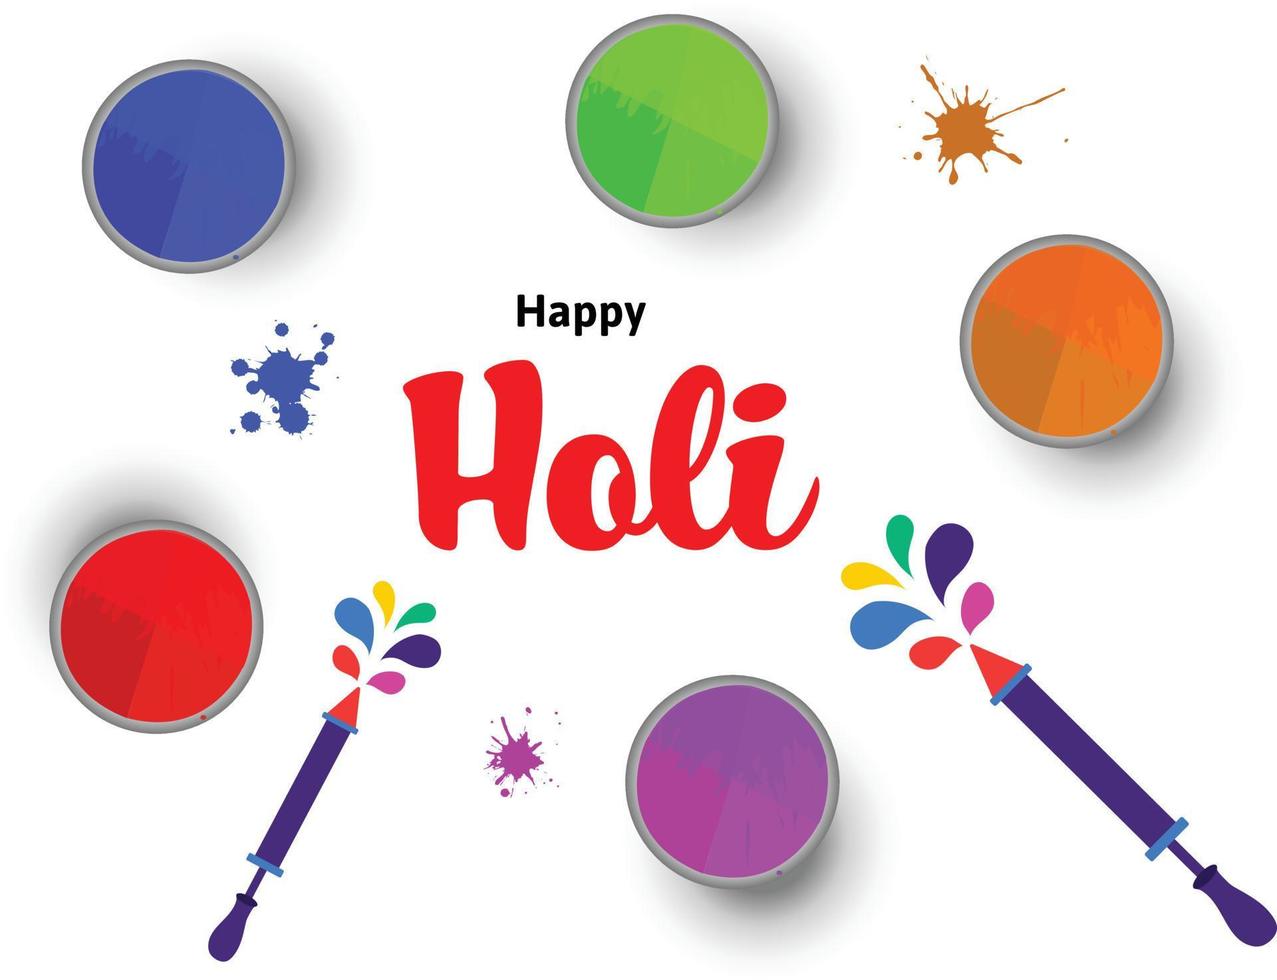 contento holi festival de colores indio festival celebracion vector ilustraciones